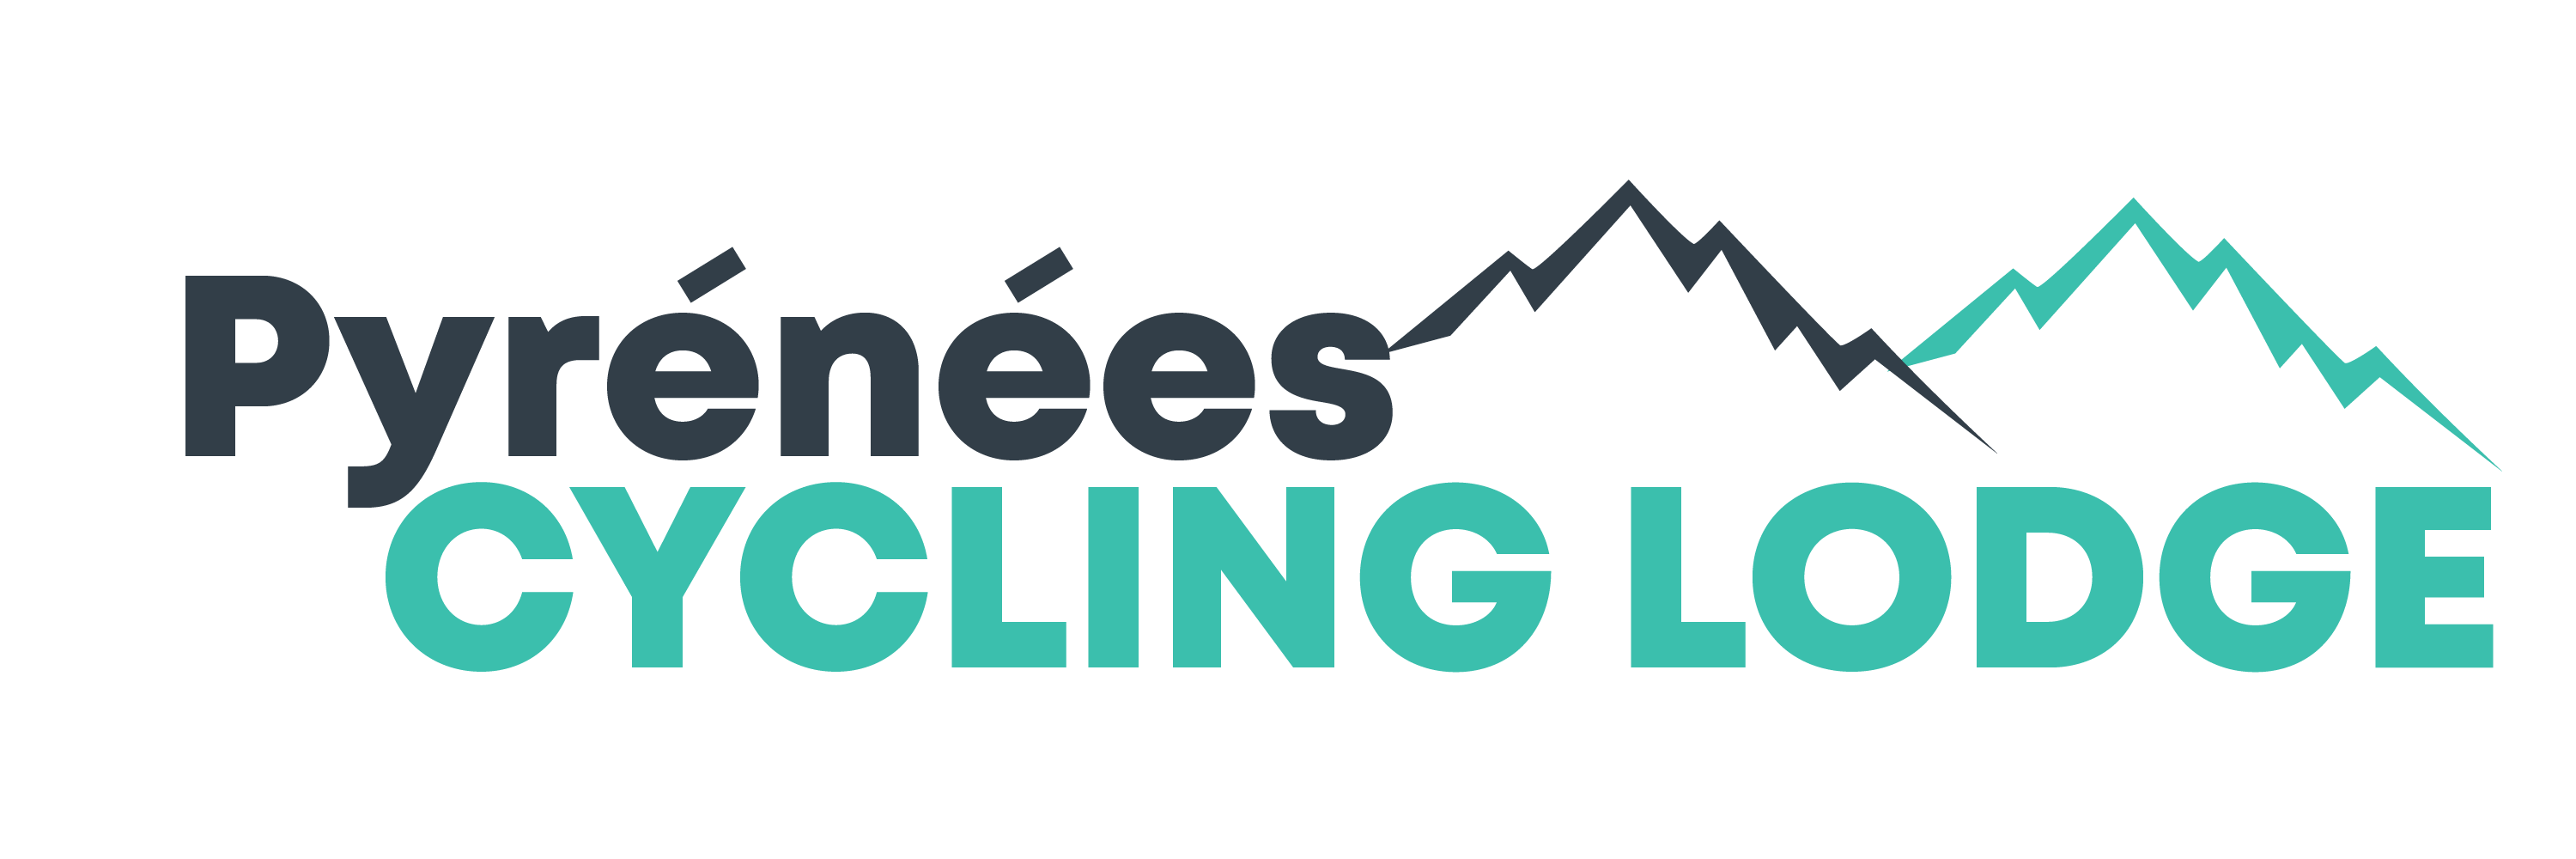 Lodge Logo - Homeénées Cycling Lodge